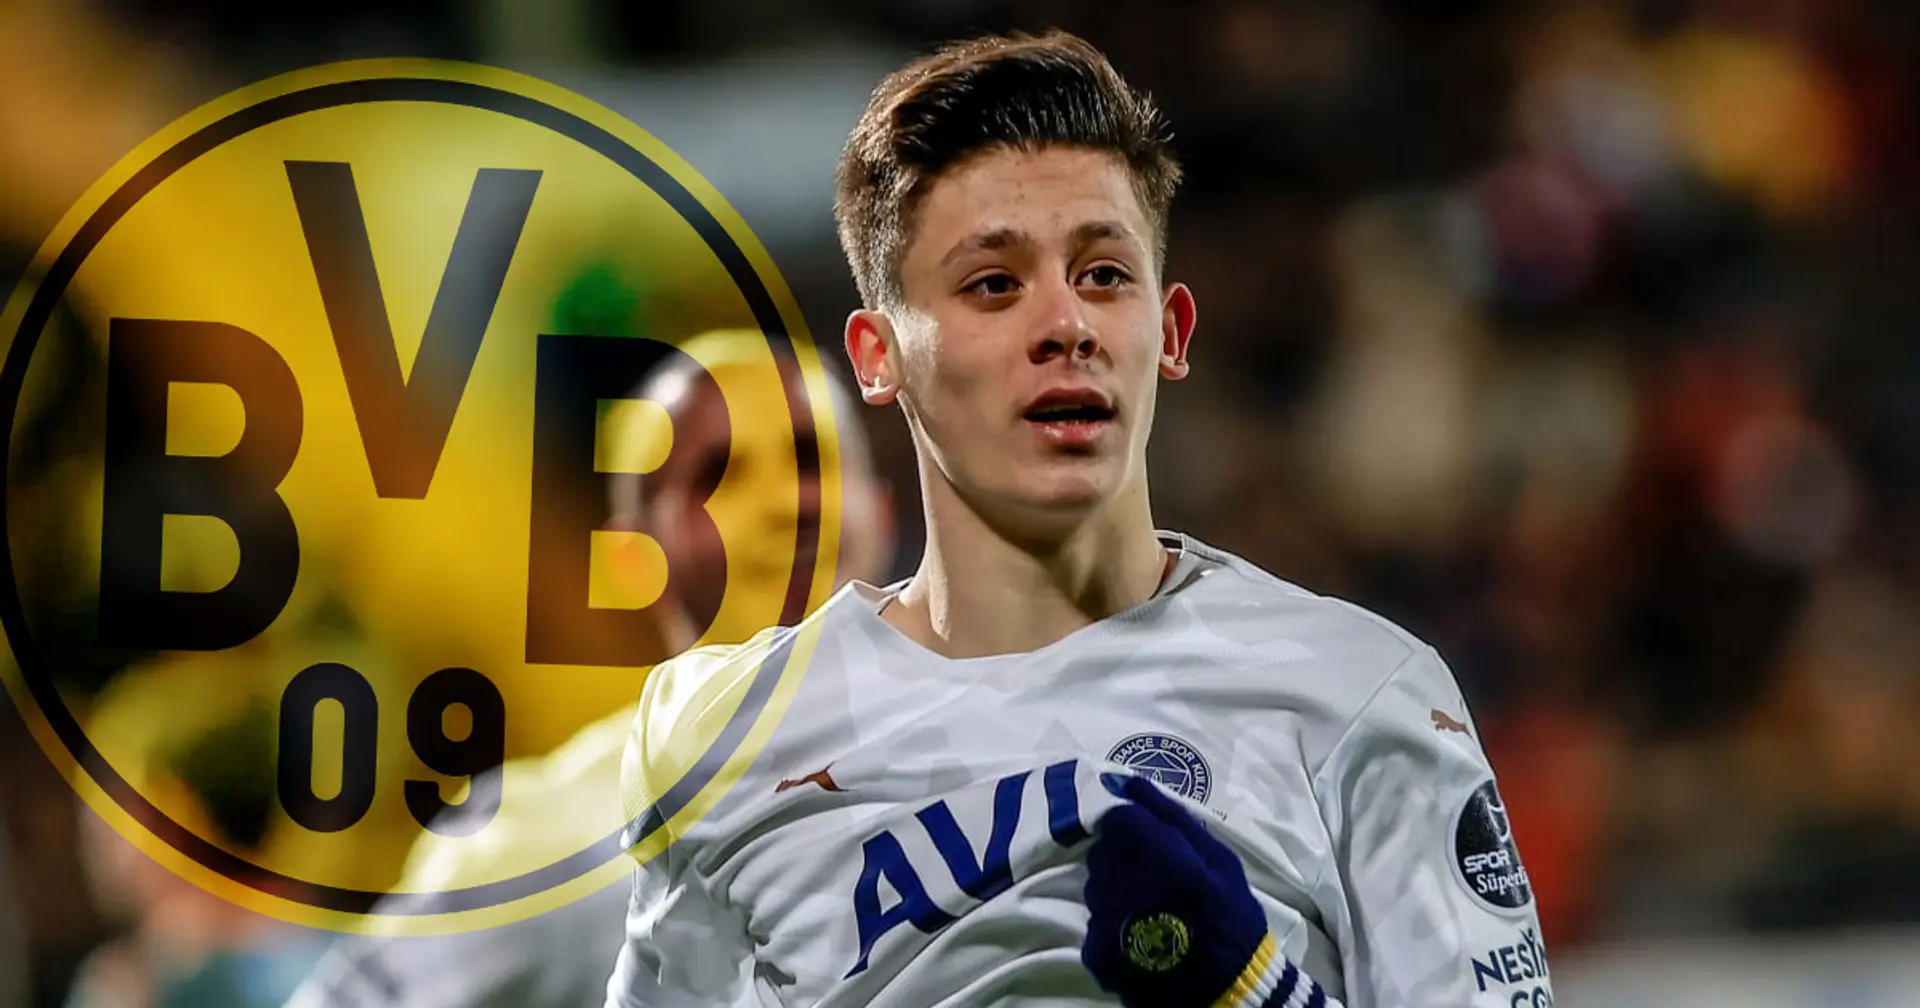 "Jahrhunderttalent" bald bei Dortmund? BVB will alles tun, um Arda Güler doch zu holen